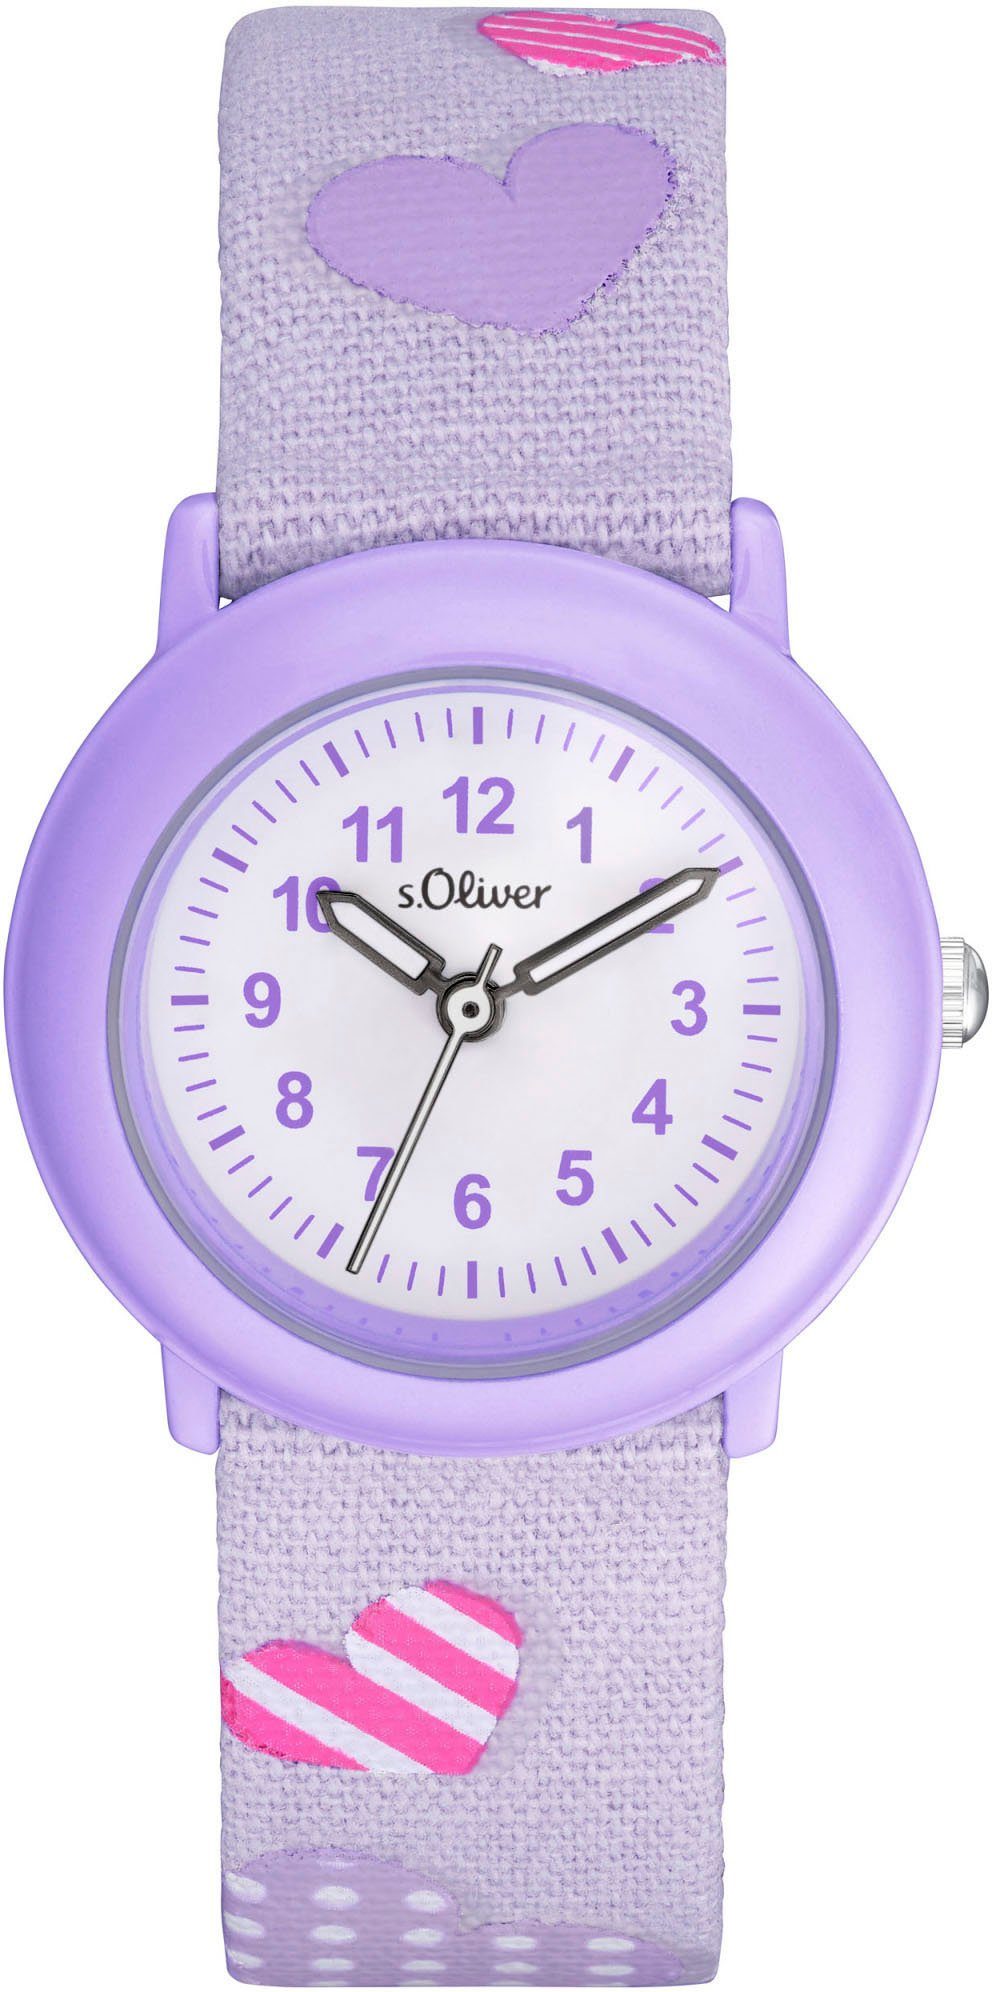 s.Oliver Quarzuhr 2036750, Armbanduhr, Kinderuhr, ideal auch als Geschenk